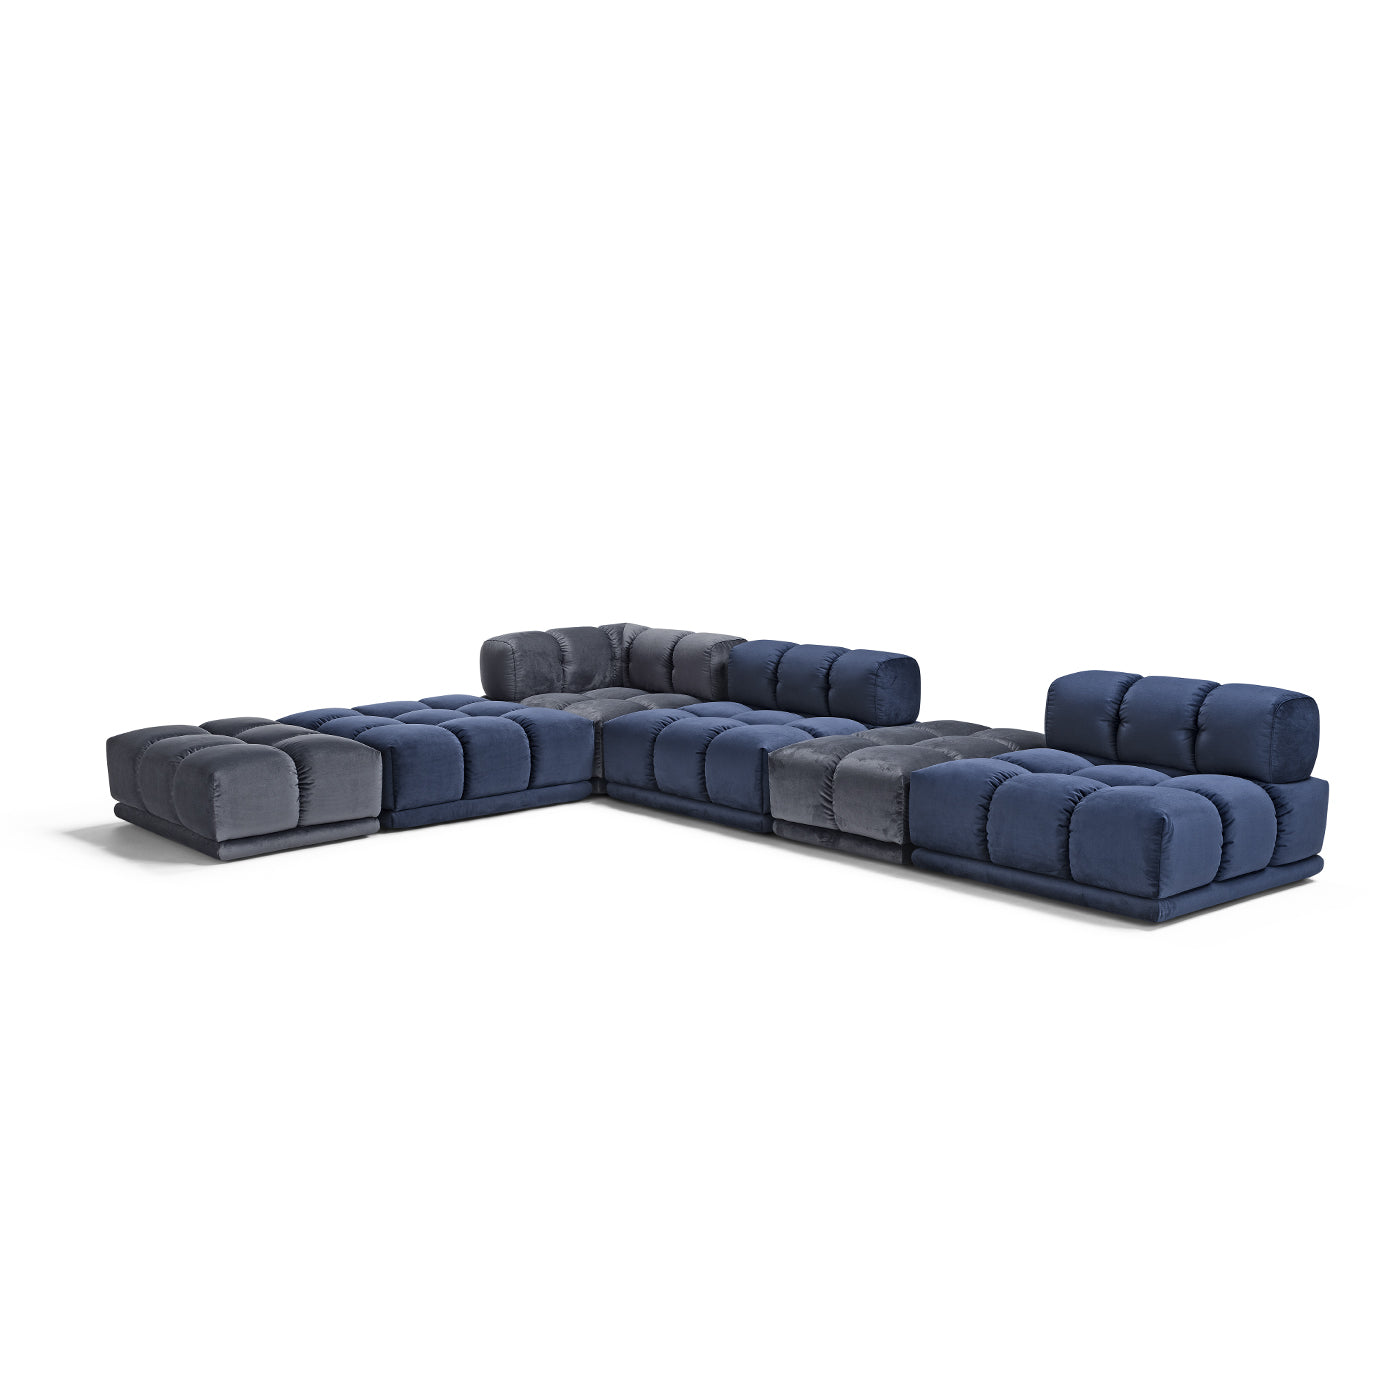 Sacai Modular Gray and Blue Sofa - Alternative view 4